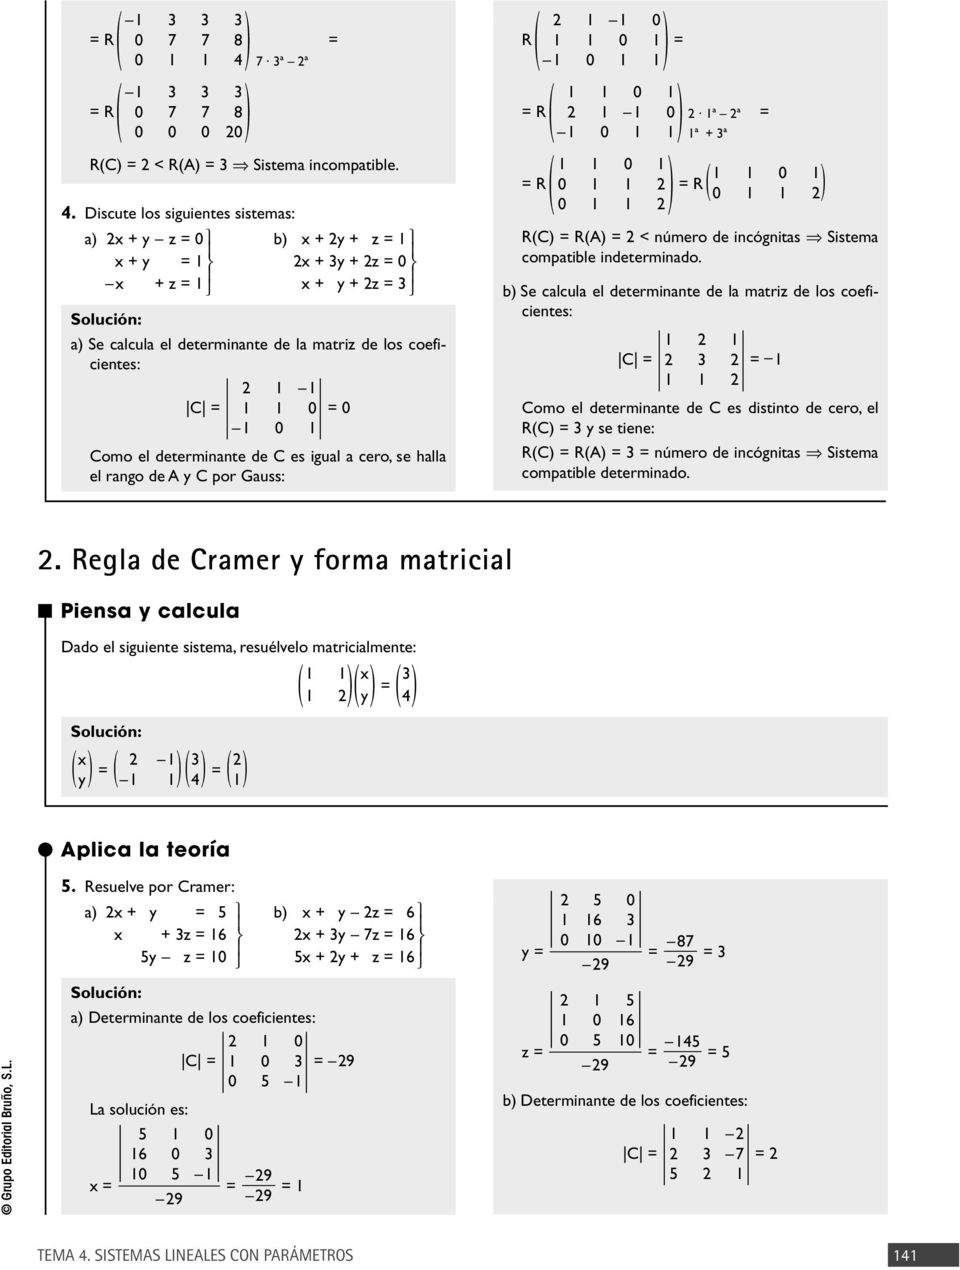 Discute los siguientes sistemas: a + y z = 0 + y = + z = b + y + z = + 3y + z = 0 + y + z = 3 a Se calcula el determinante de la matriz de los coeficientes: C = 0 = 0 0 Como el determinante de C es